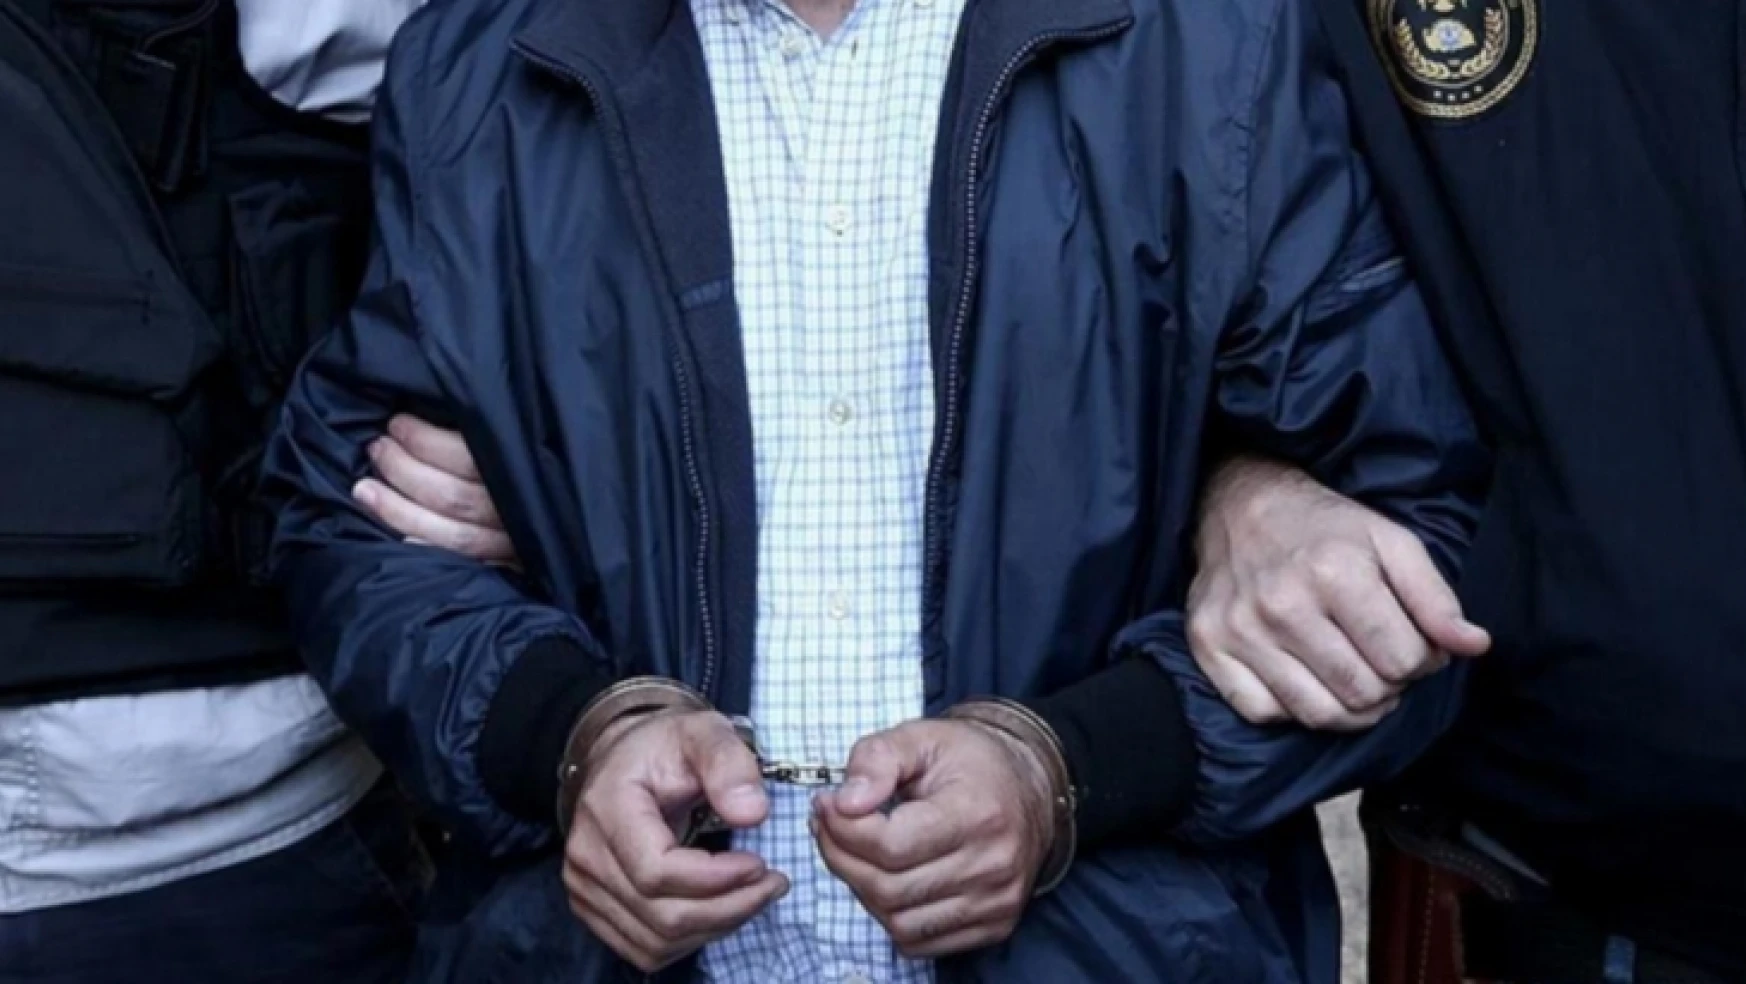 FETÖ Soruşturması: 21 polis gözaltında, 4 polis tutuklandı